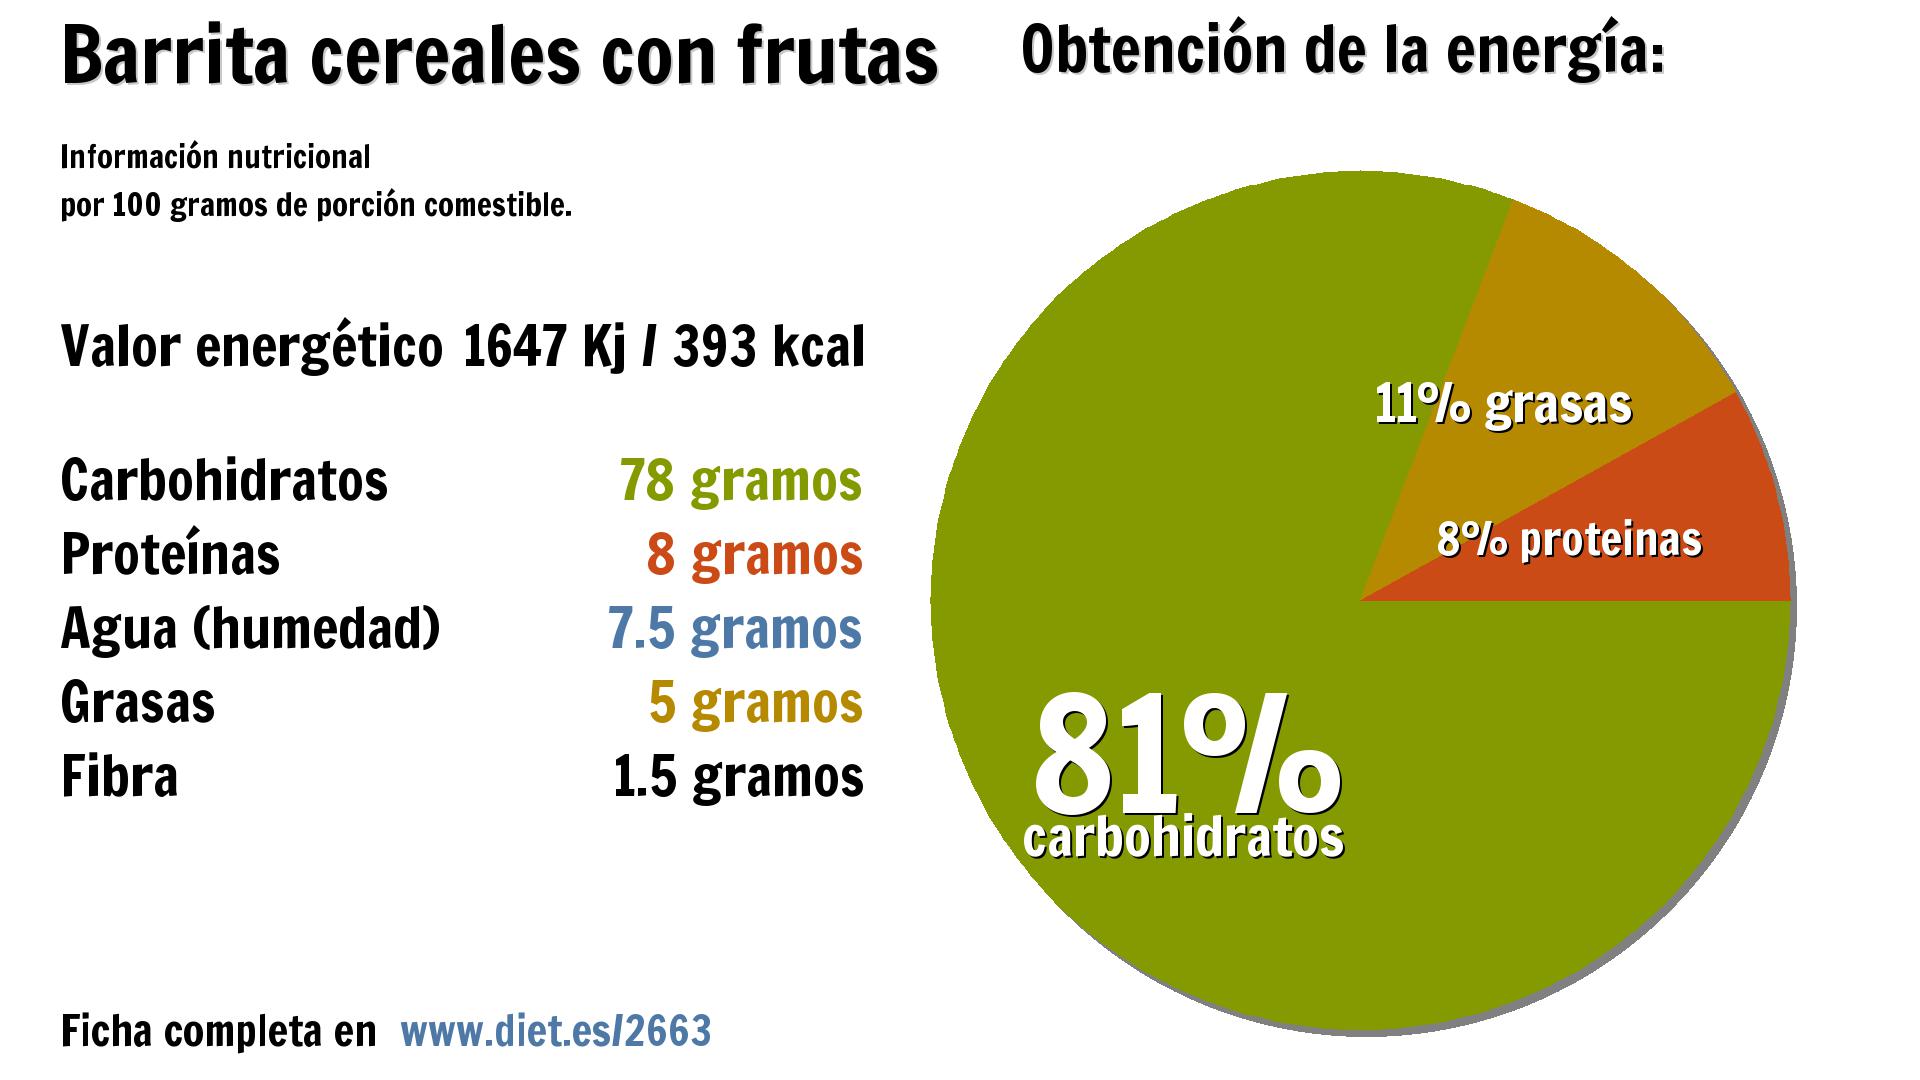 Barrita cereales con frutas: energía 1647 Kj, carbohidratos 78 g., proteínas 8 g., agua 8 g., grasas 5 g. y fibra 2 g.